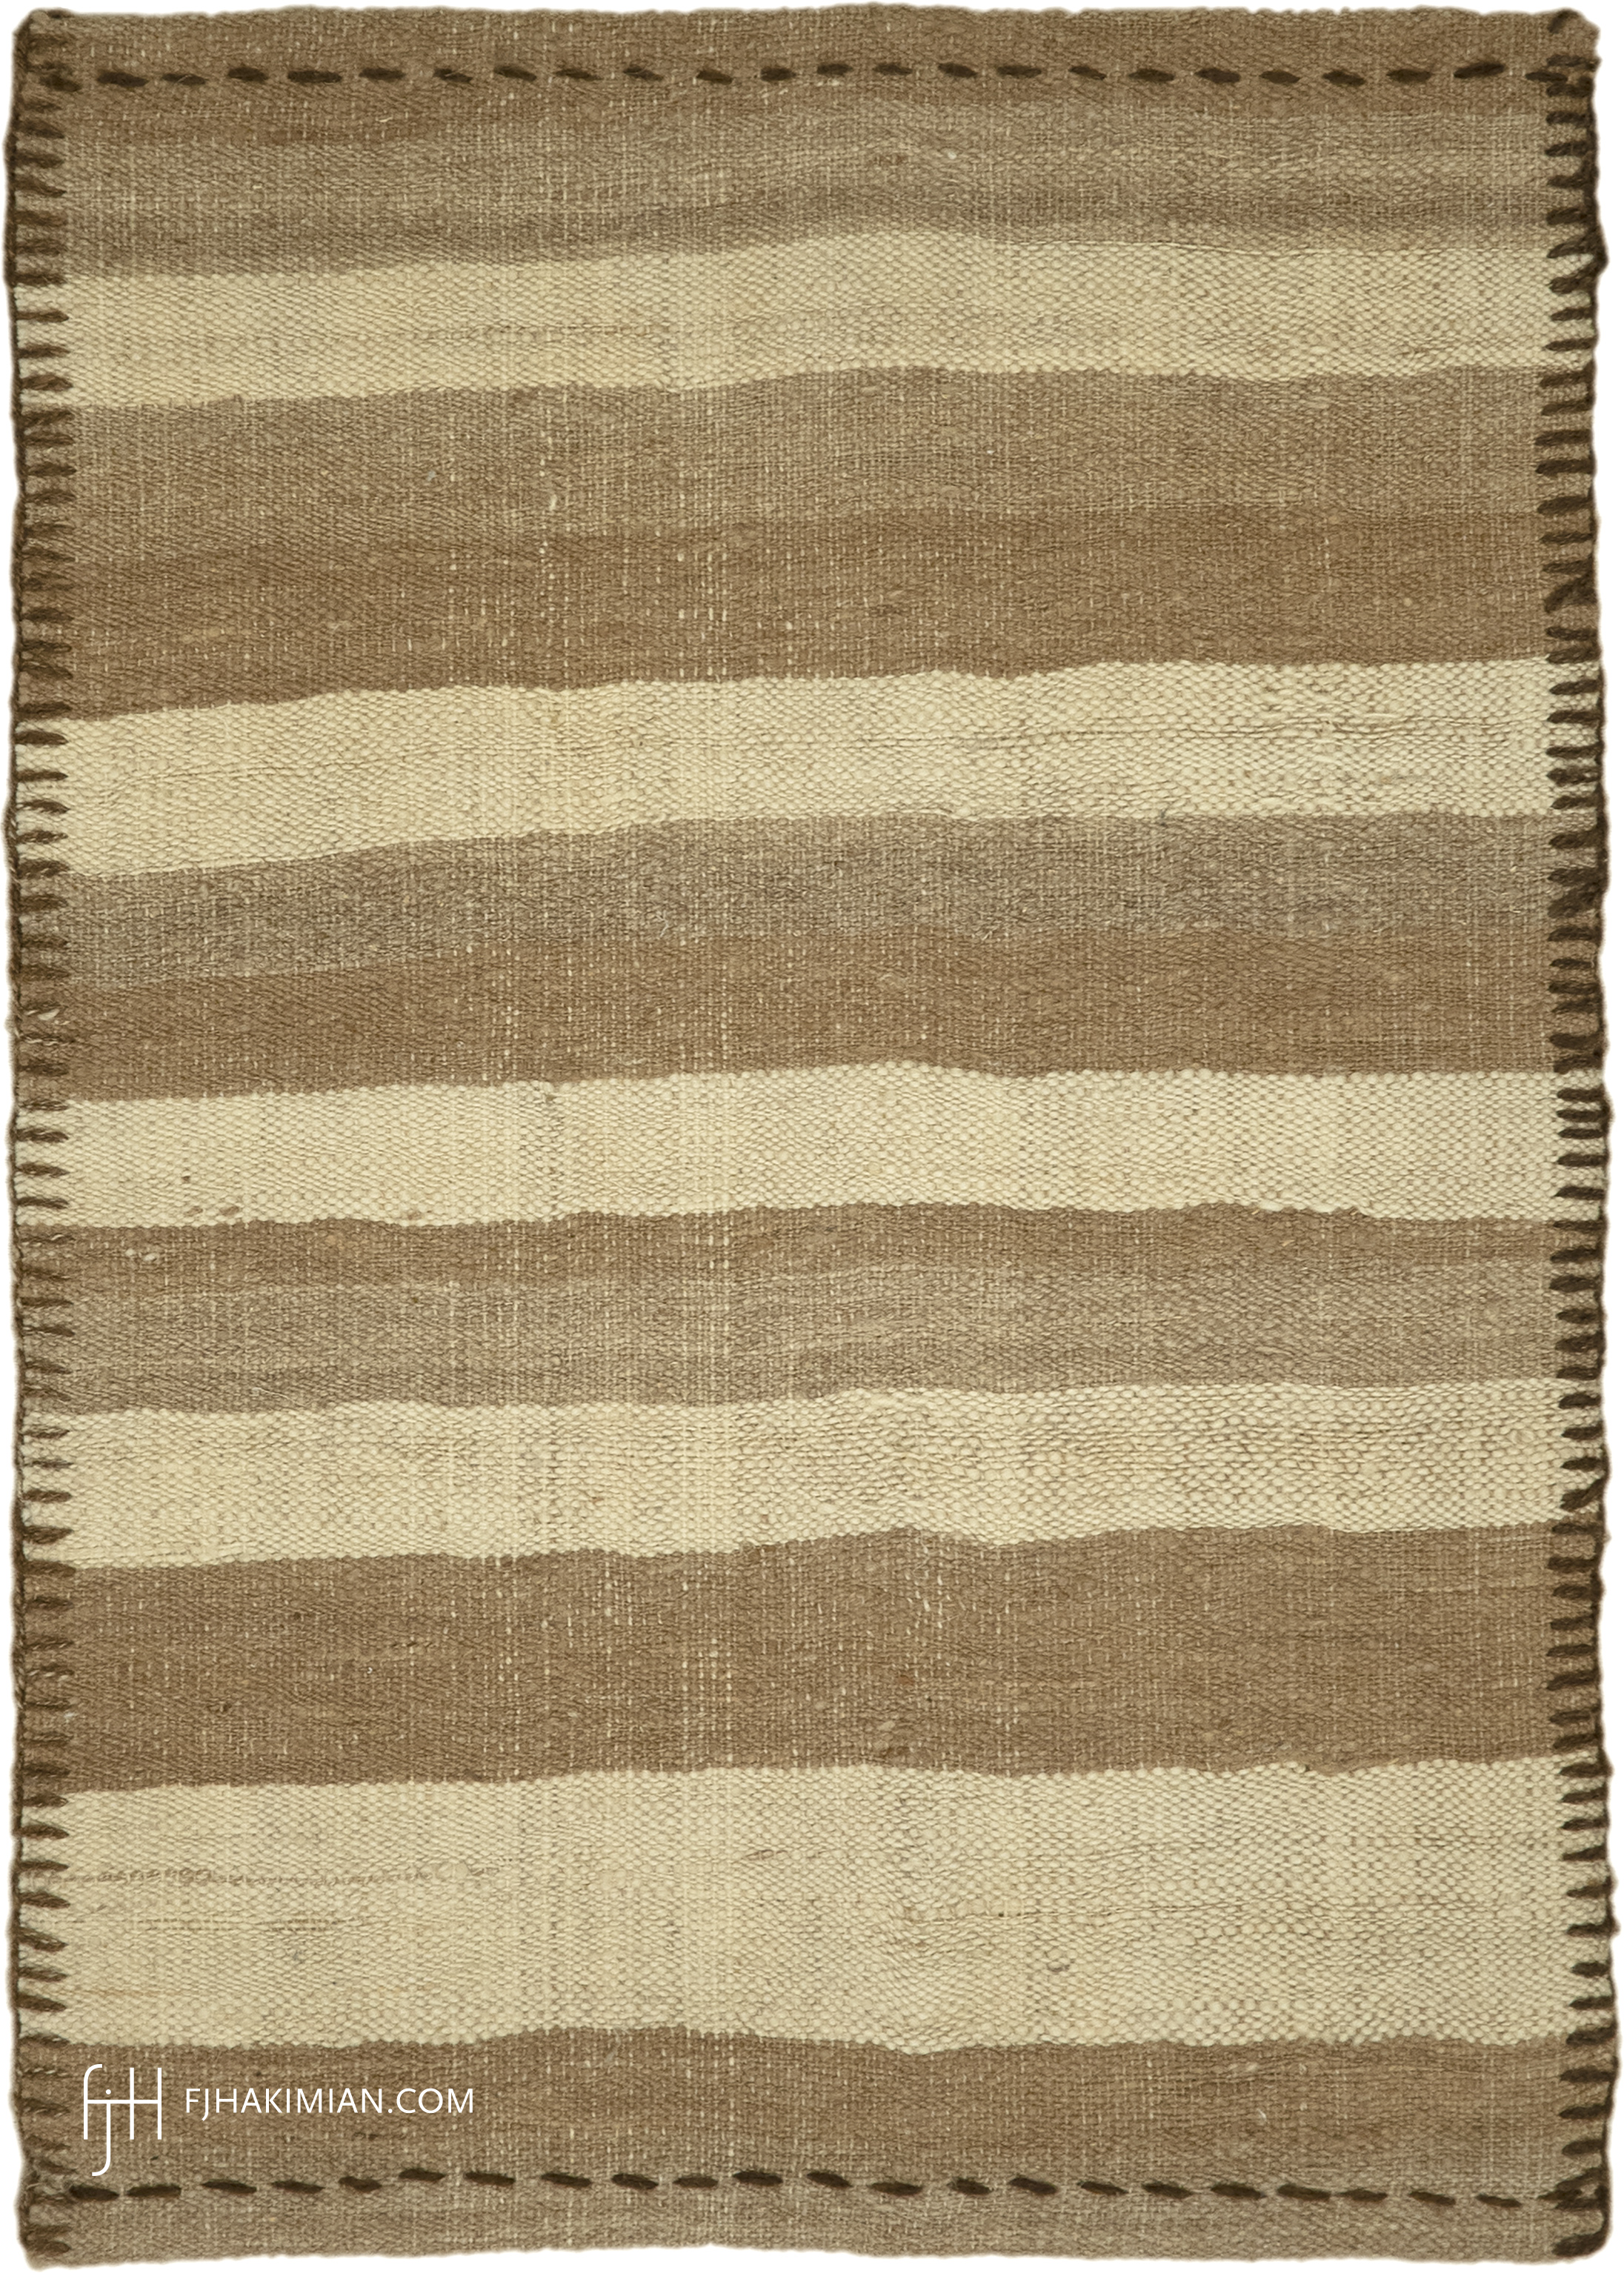 FJ Hakimian | 17467 | Custom Carpet